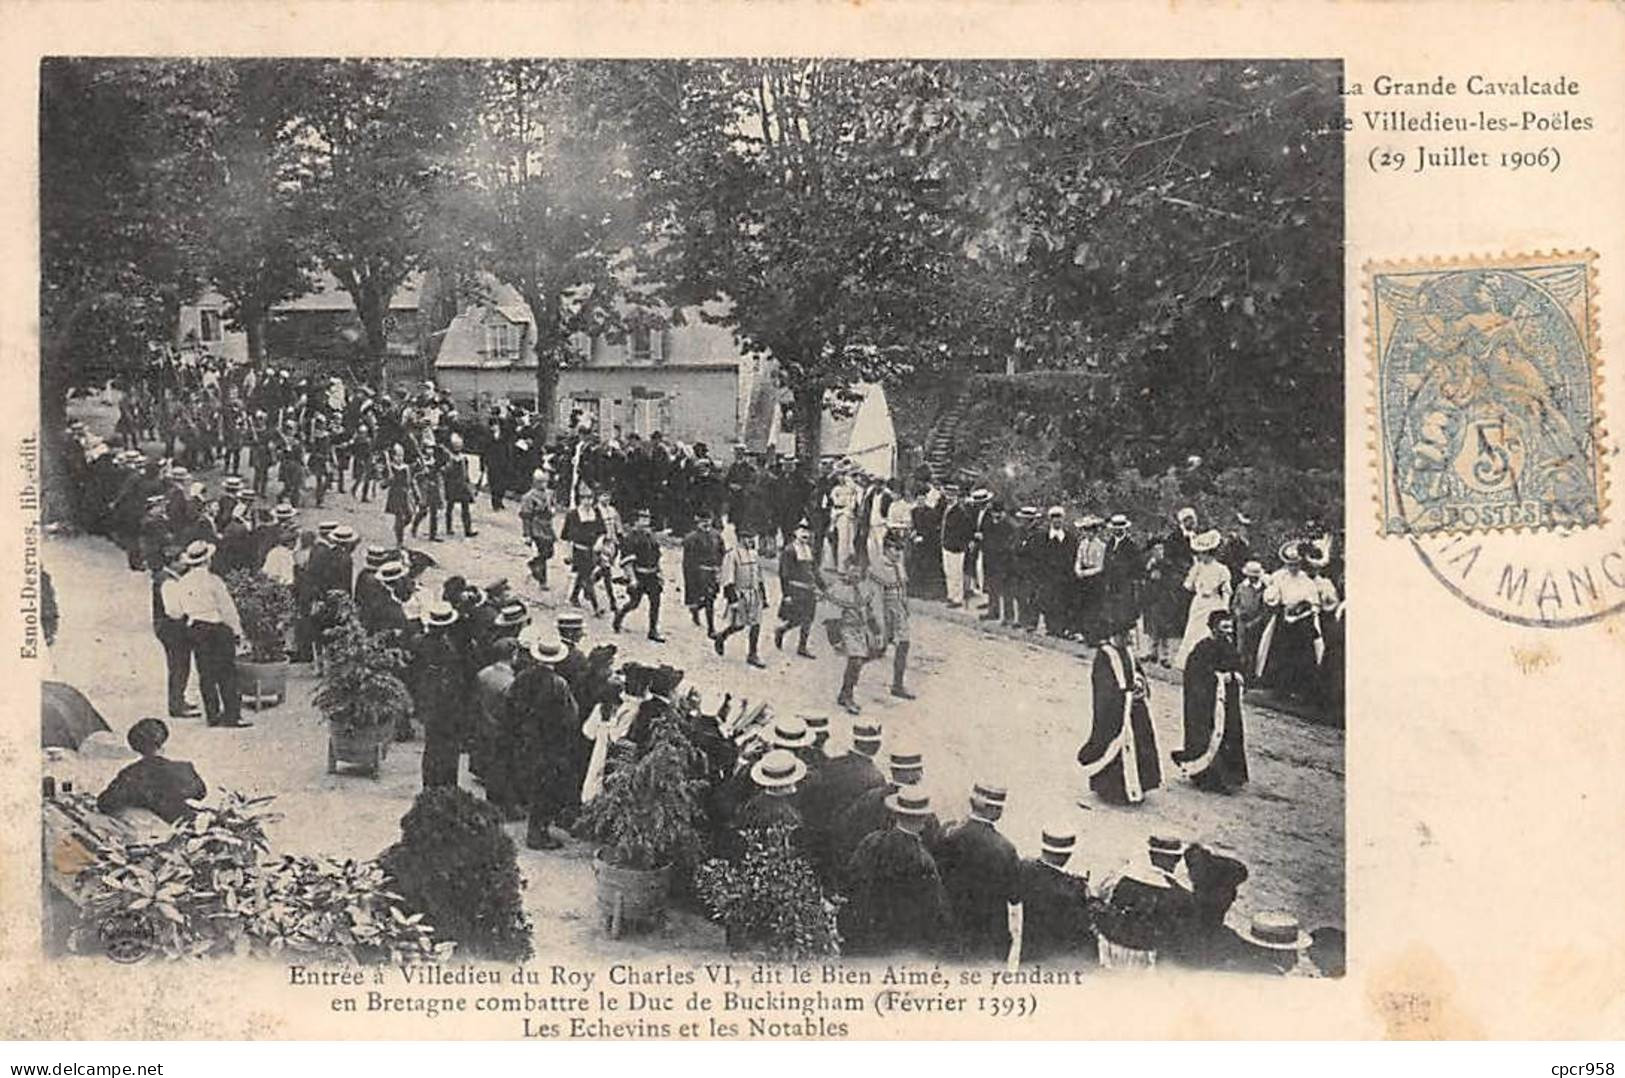 50 - VILLEDIEU LES POELES - SAN51684 - La Grande Cavalcade - 29 Juillet 1906 - Entrée Du Roy Charles VI... - Villedieu